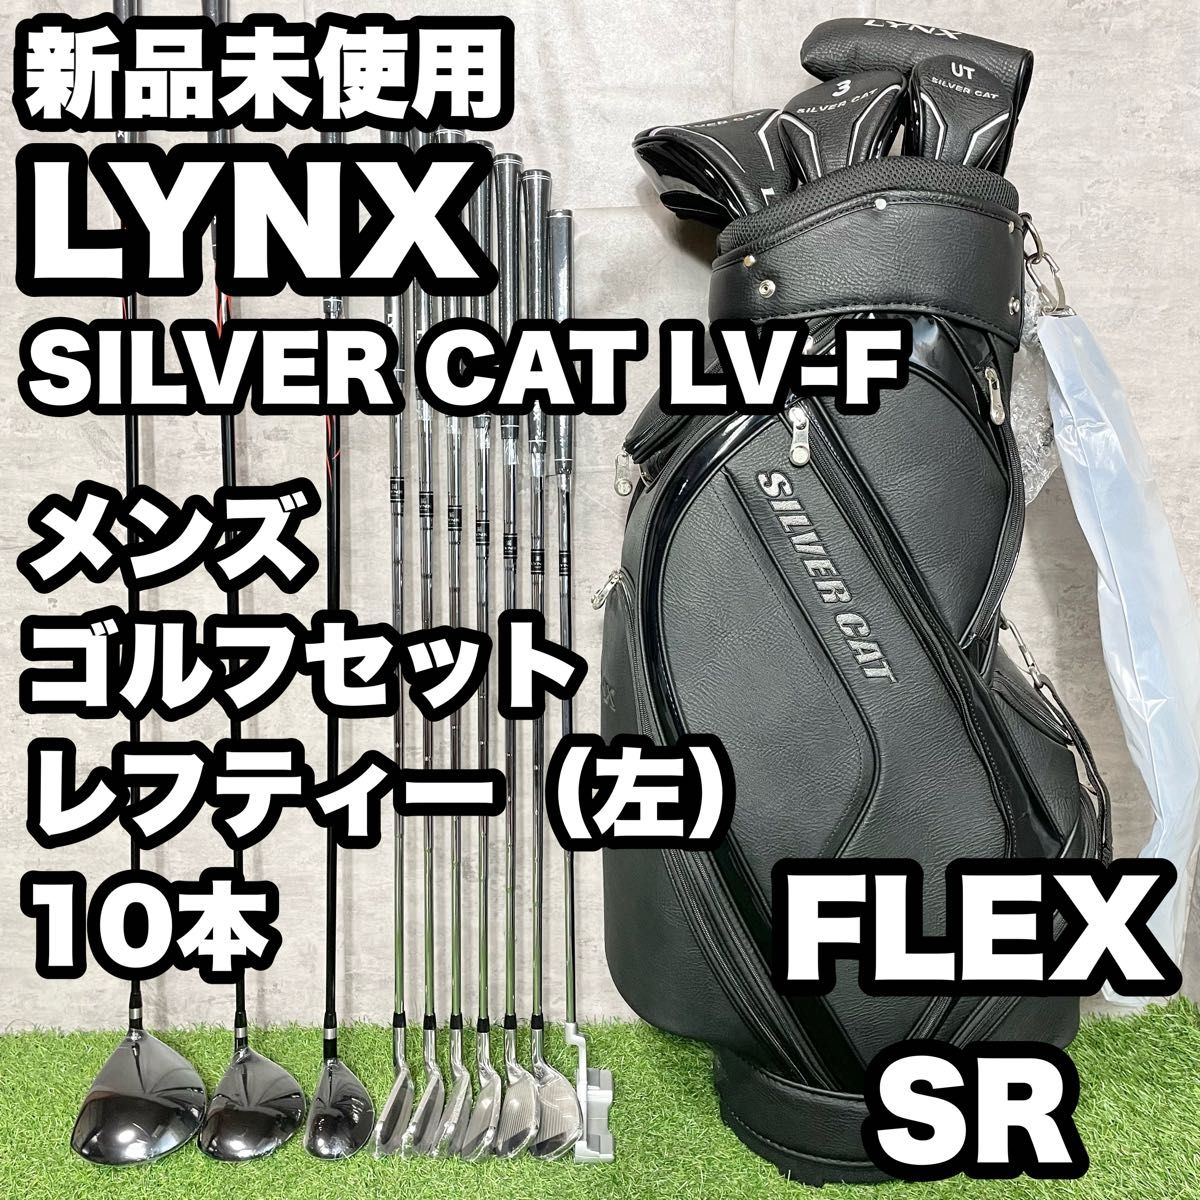 リンクス LYNX メンズ ゴルフクラブセット SR 初心者 - クラブ